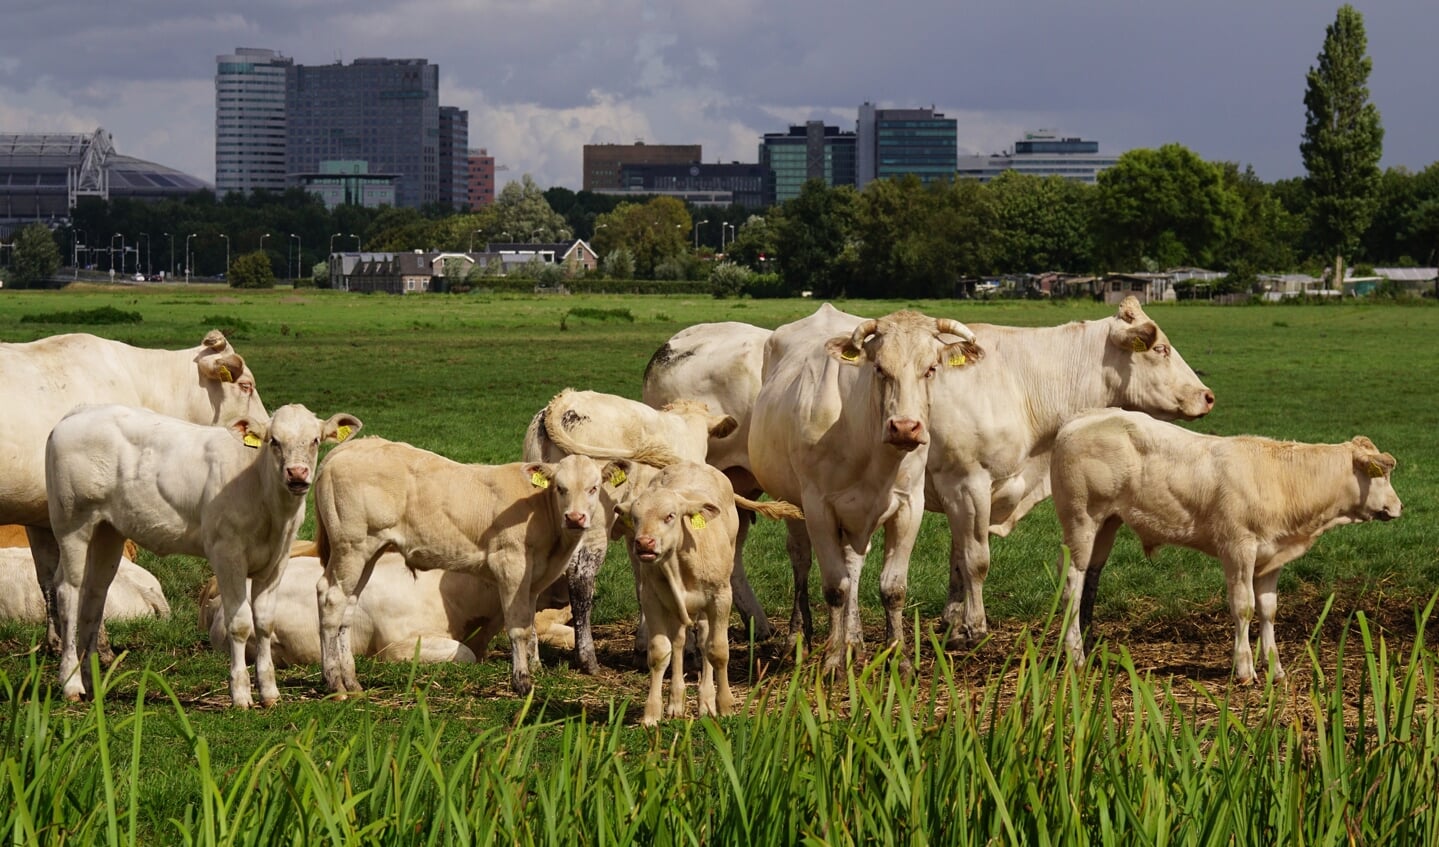 De blonde d’Aquitaine vleeskoeien van Gijs zijn bekend in Ouderkerk en omgeving. De koeien zijn tijdens de Amstellanddag van dichtbij te bewonderen. 